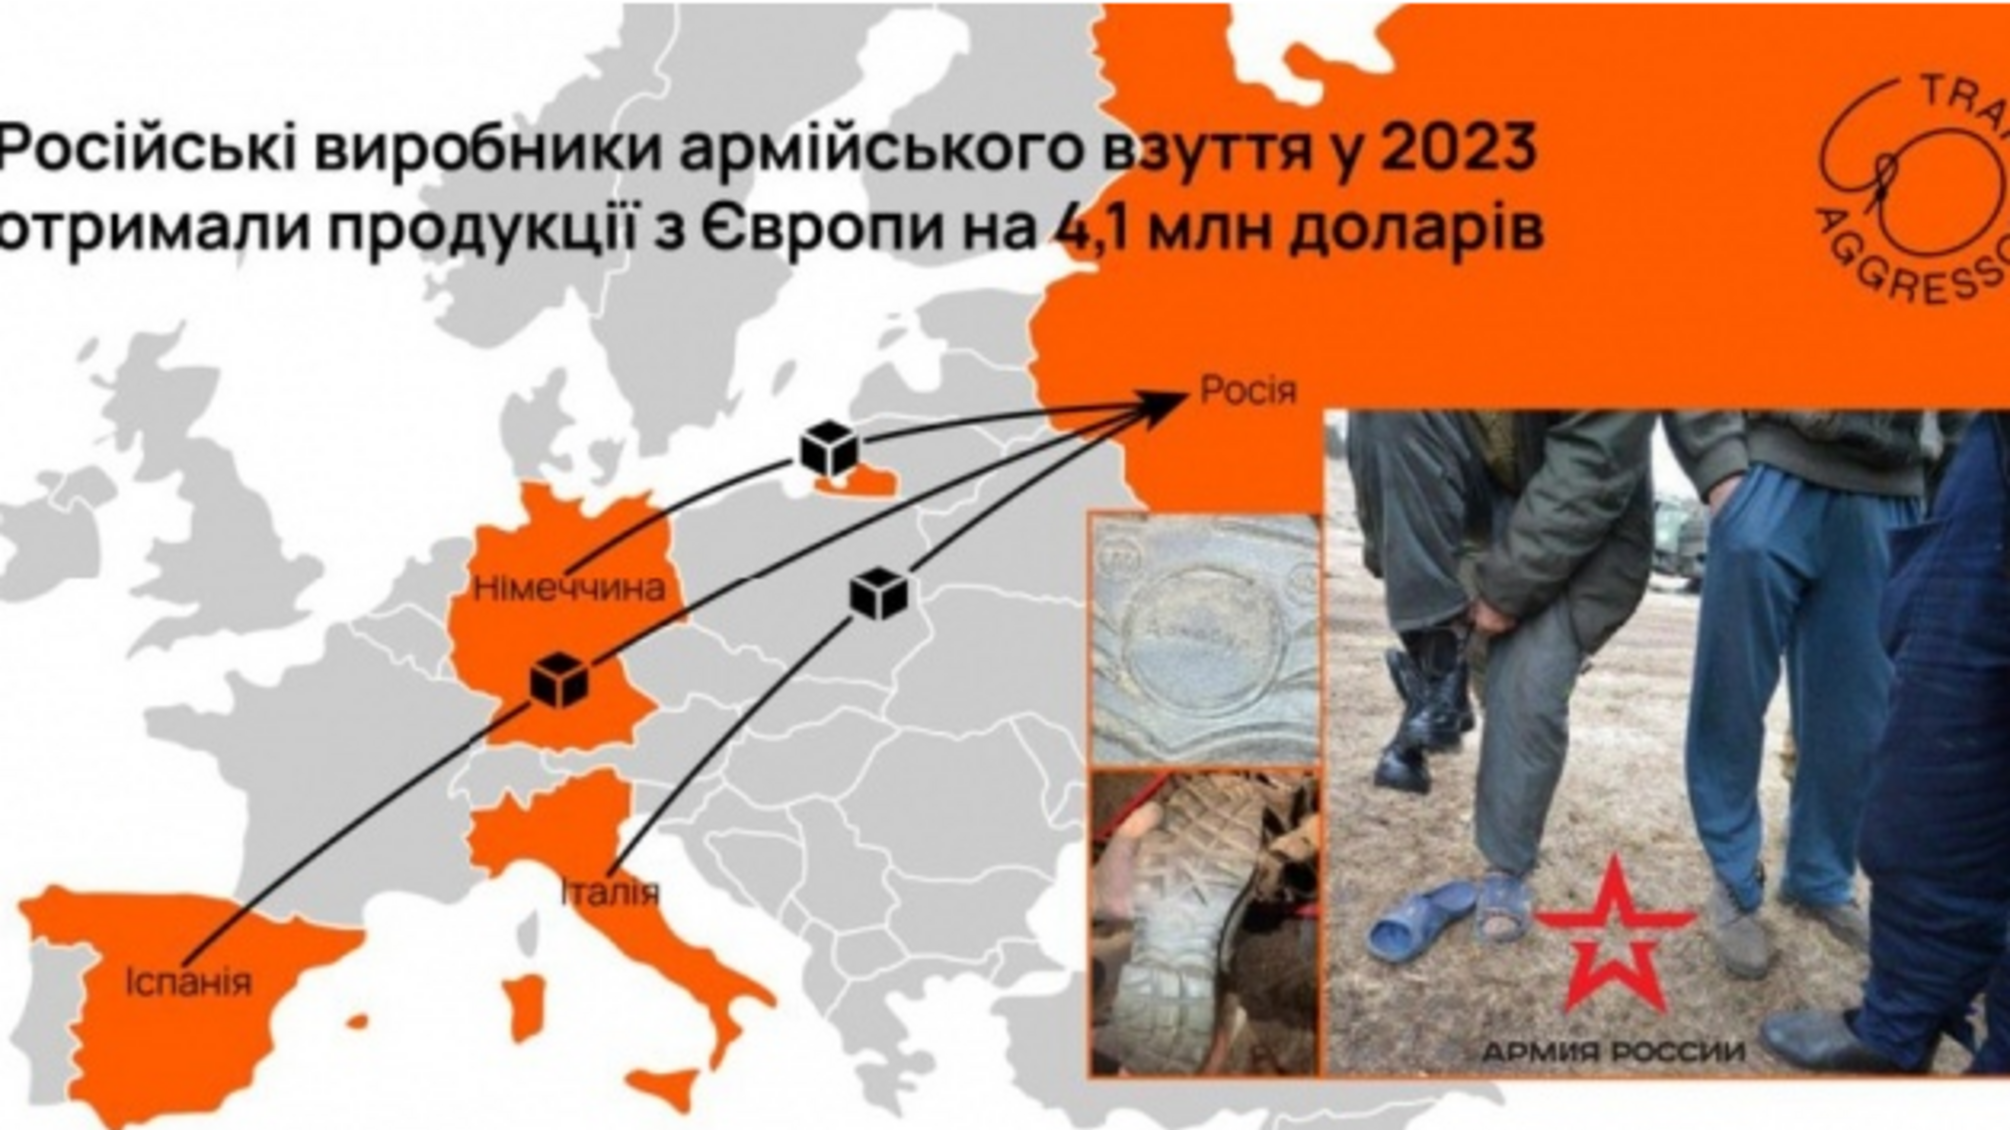 Российские производители обуви для военных закупают продукцию у европейских компаний за 4,1 млн грн, - Trap Aggressor